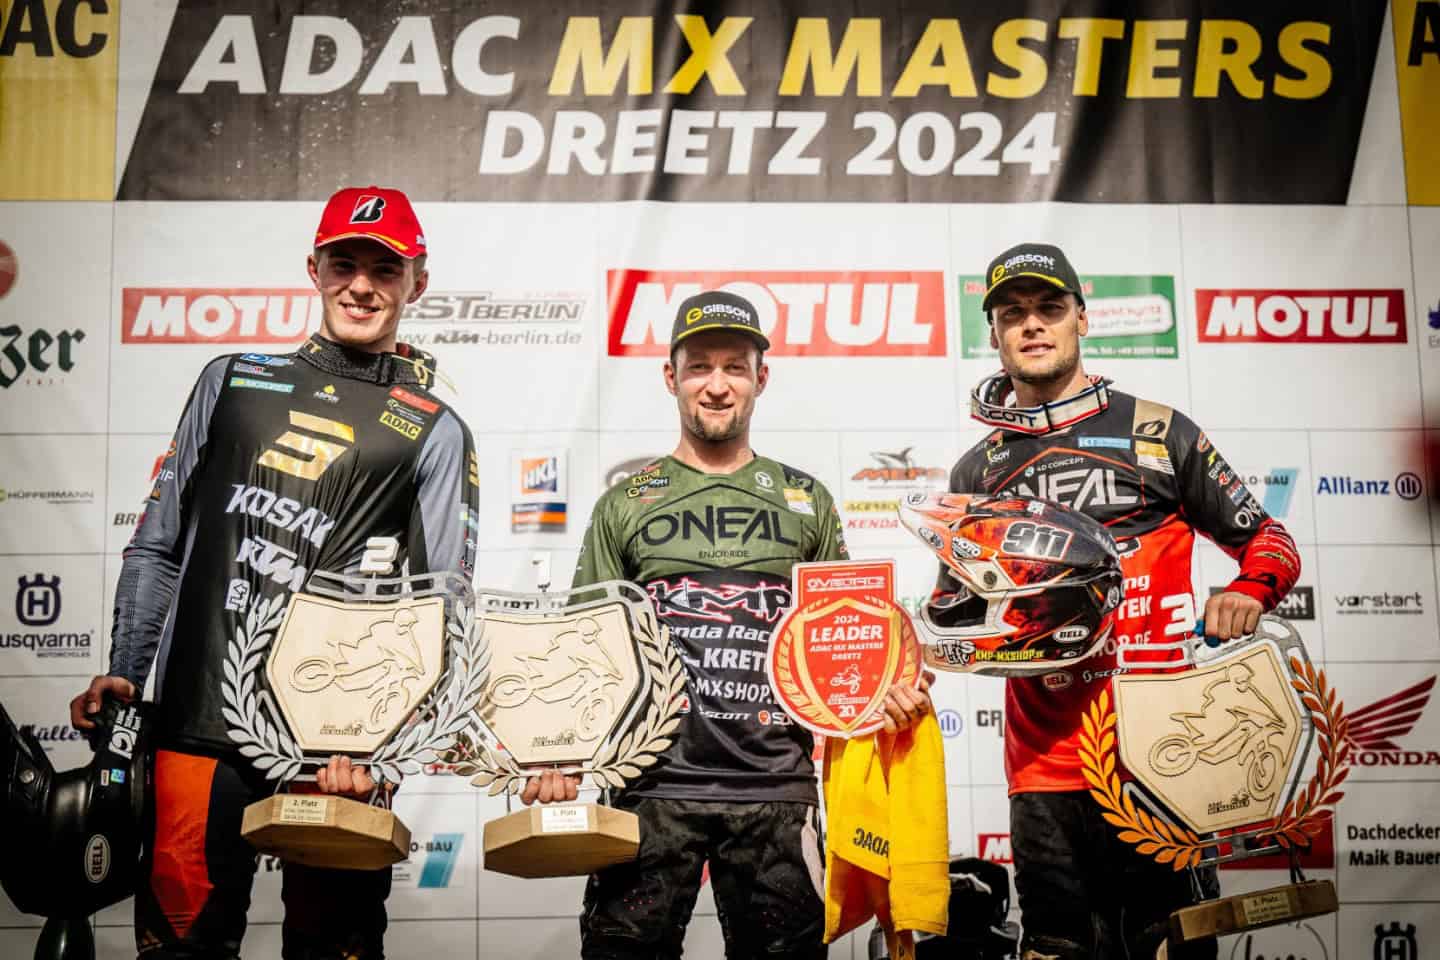 ADAC MX Masters 2024 in Dreetz - Fahrerstimmen - Maximilian Nagl